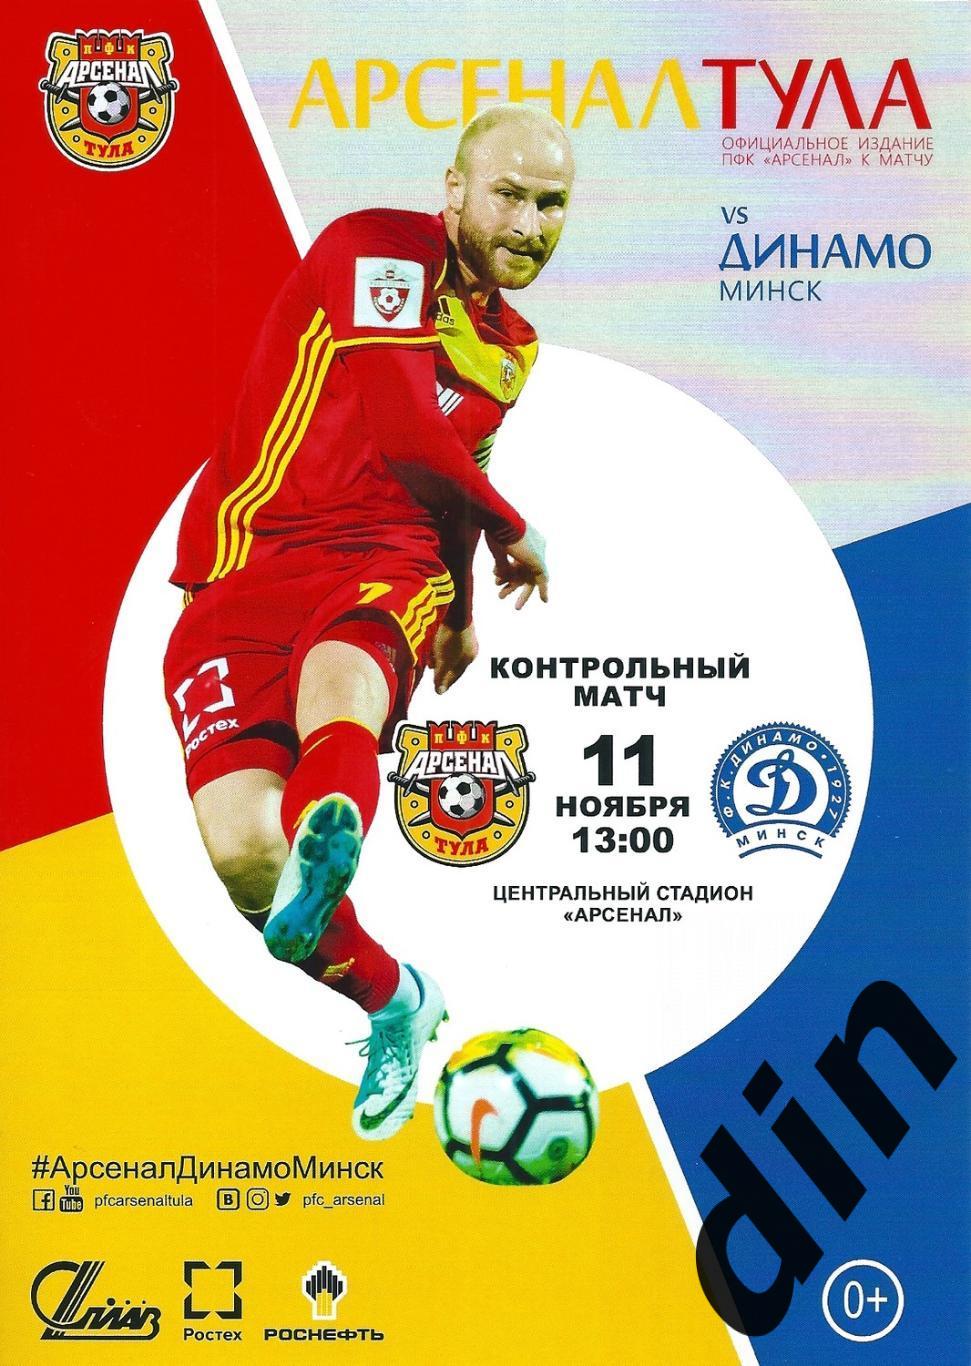 Арсенал Тула- Динамо Минск 11.11.2017